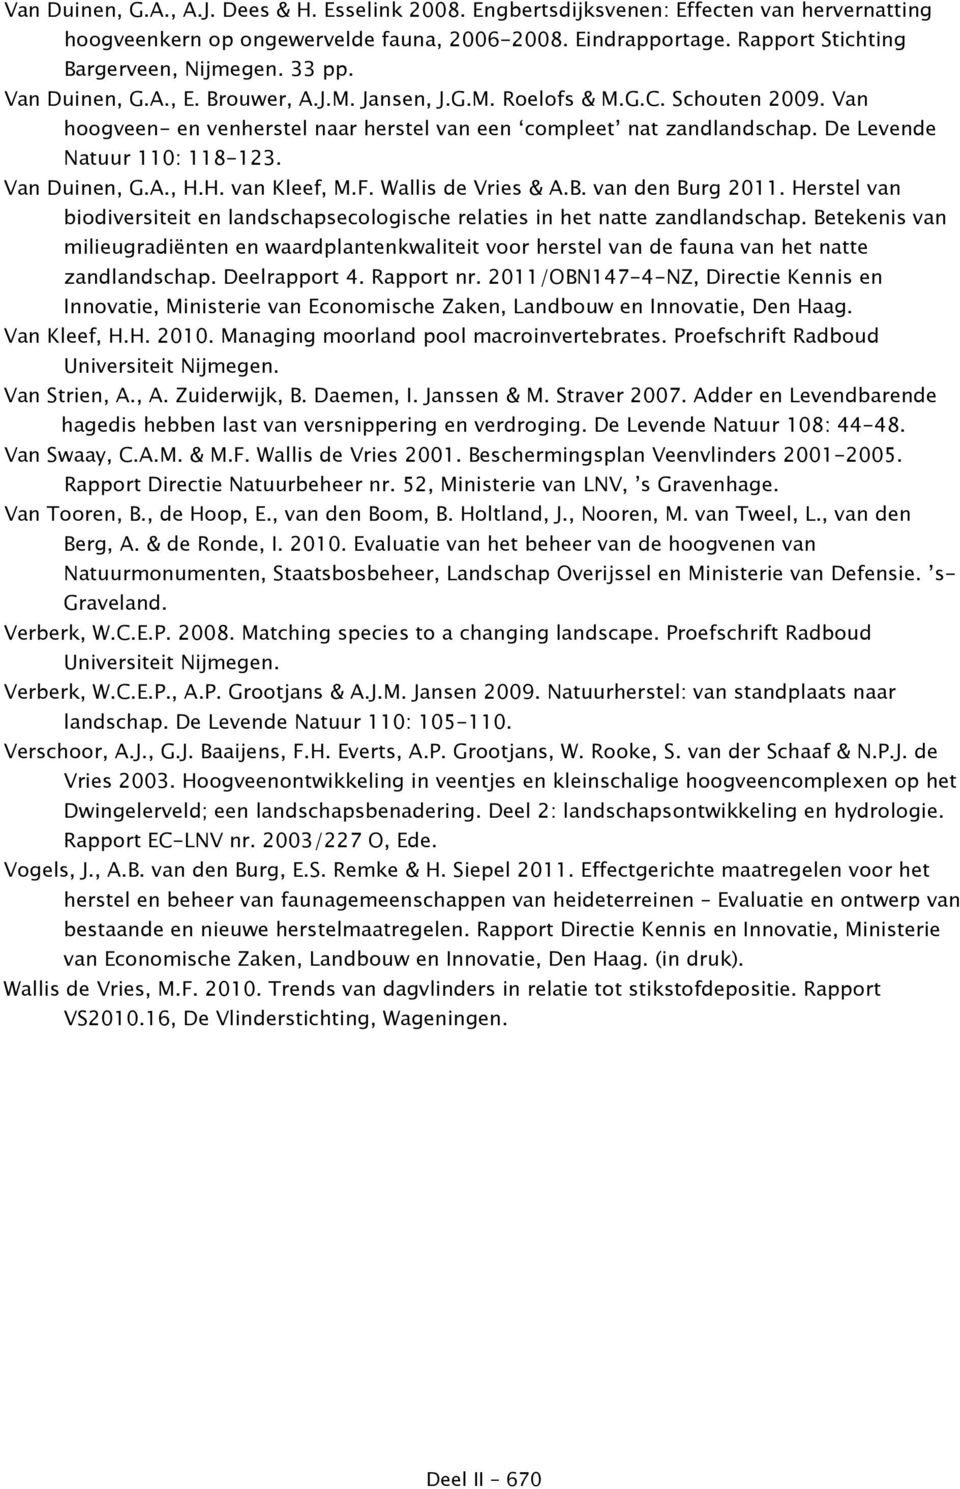 Van Duinen, G.A., H.H. van Kleef, M.F. Wallis de Vries & A.B. van den Burg 2011. Herstel van biodiversiteit en landschapsecologische relaties in het natte zandlandschap.